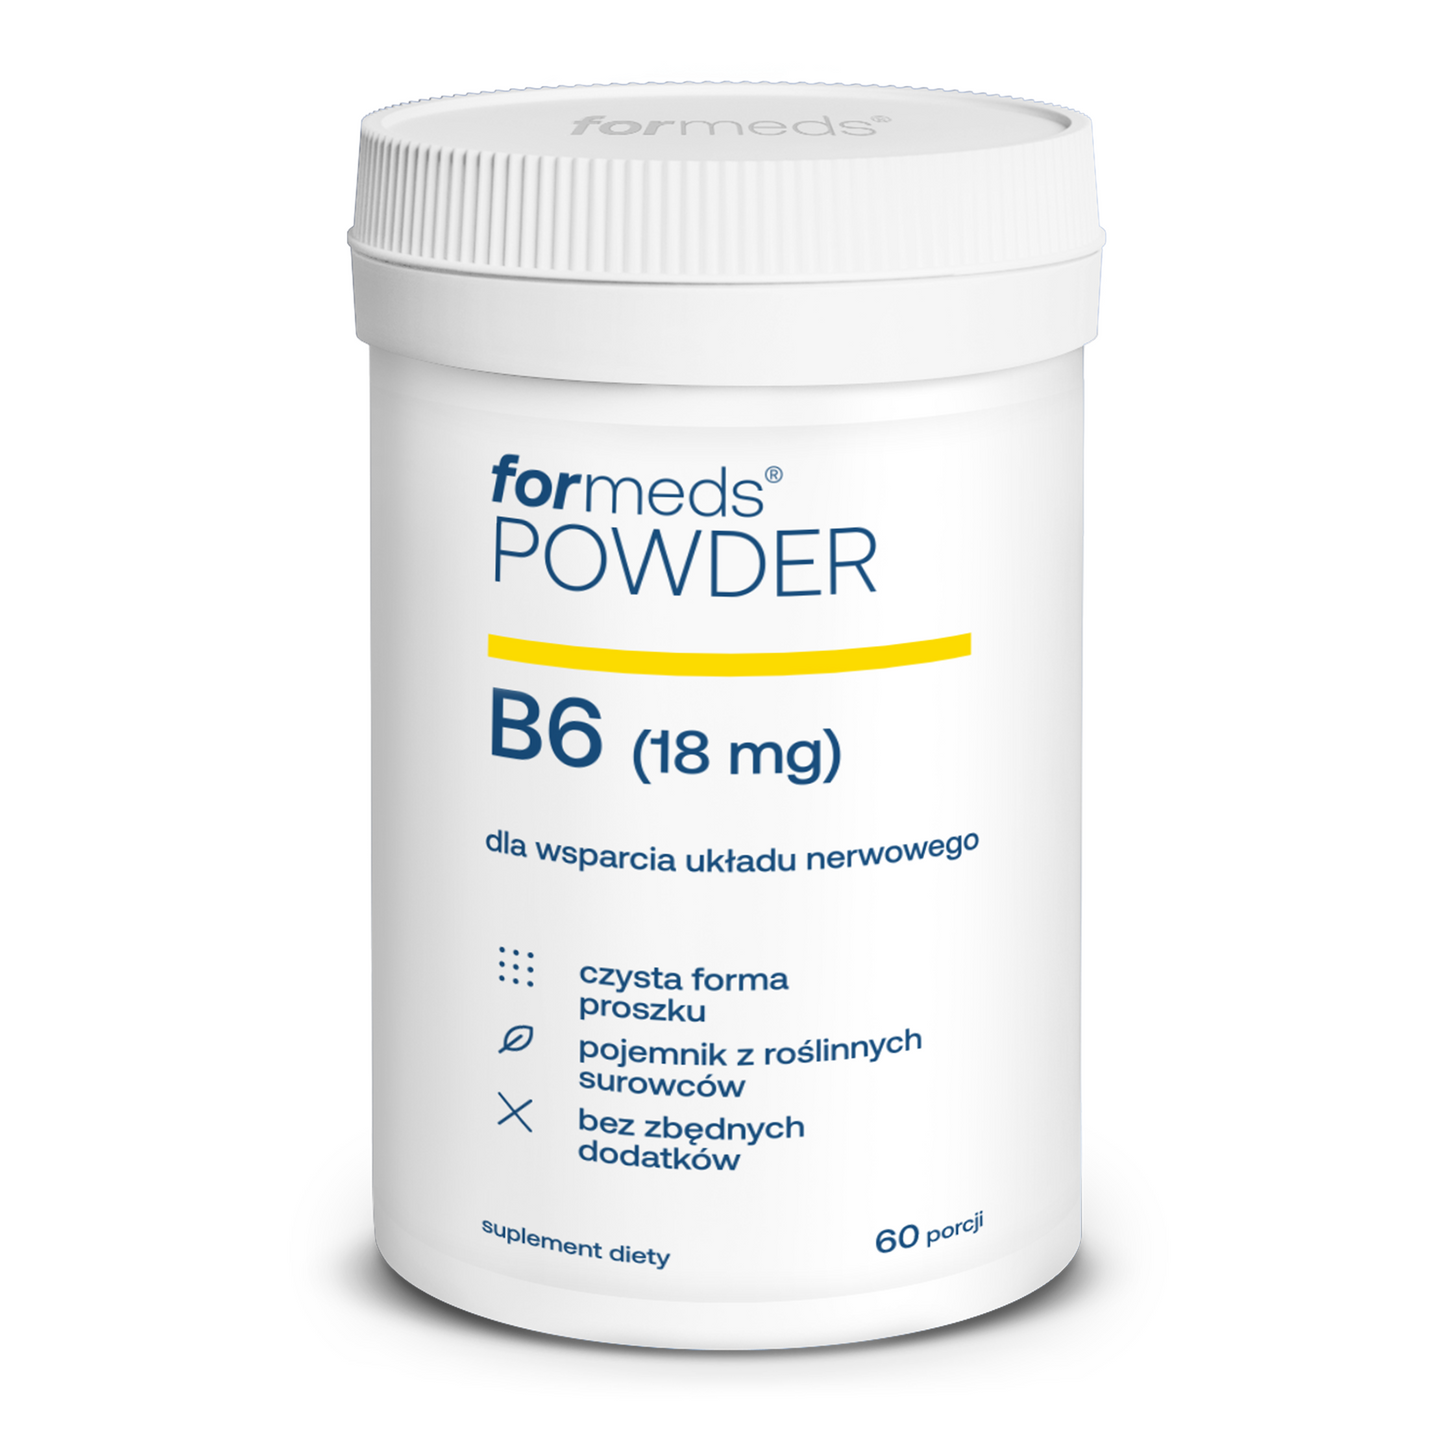 POWDER B6 - witamina B6 w proszku